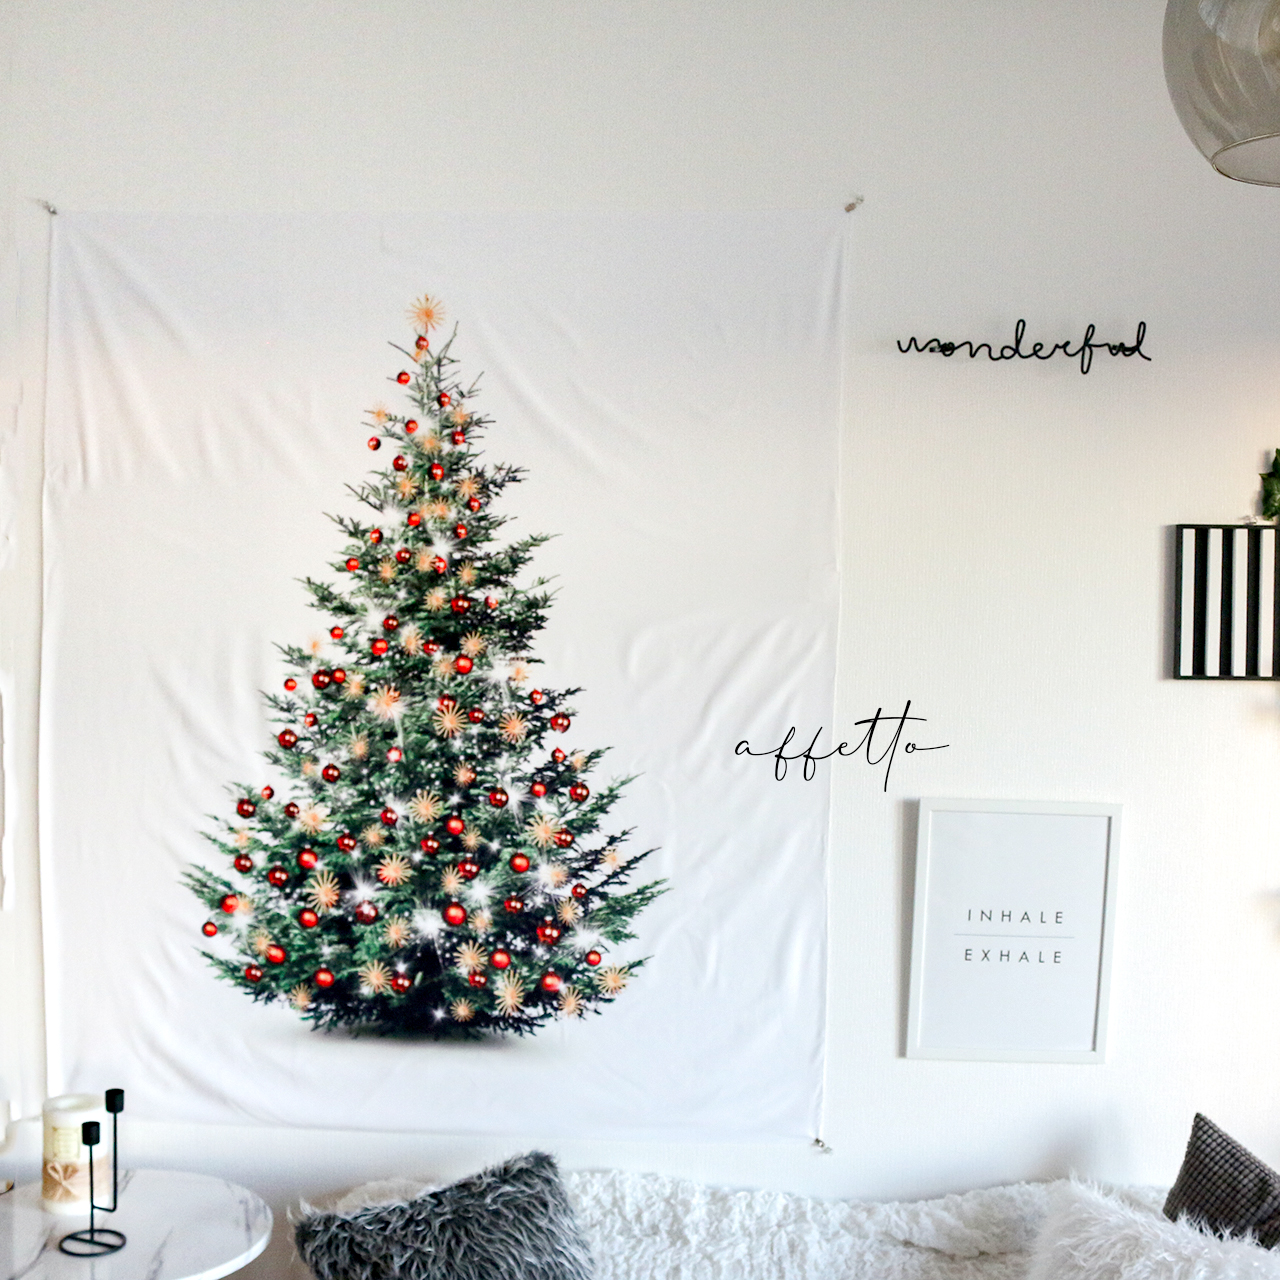 お洒落な壁掛けクリスマスツリー♪【100cm×150cm】